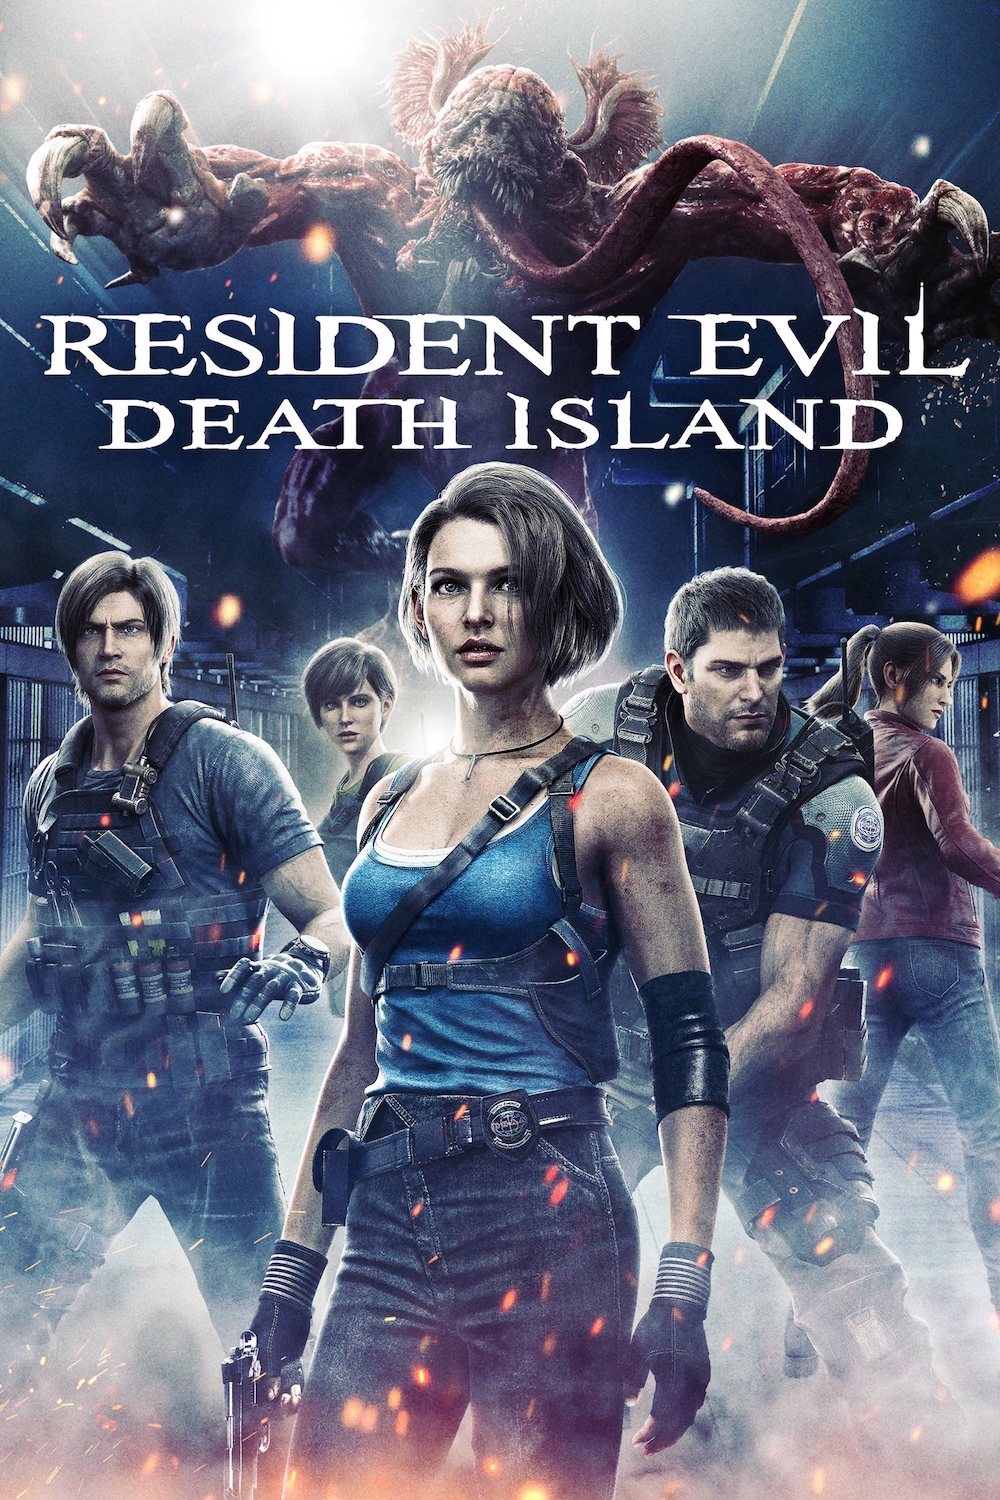 Джилл Валентайн сражается с зомби в новом трейлере фильма «Обитель зла: Остров смерти»